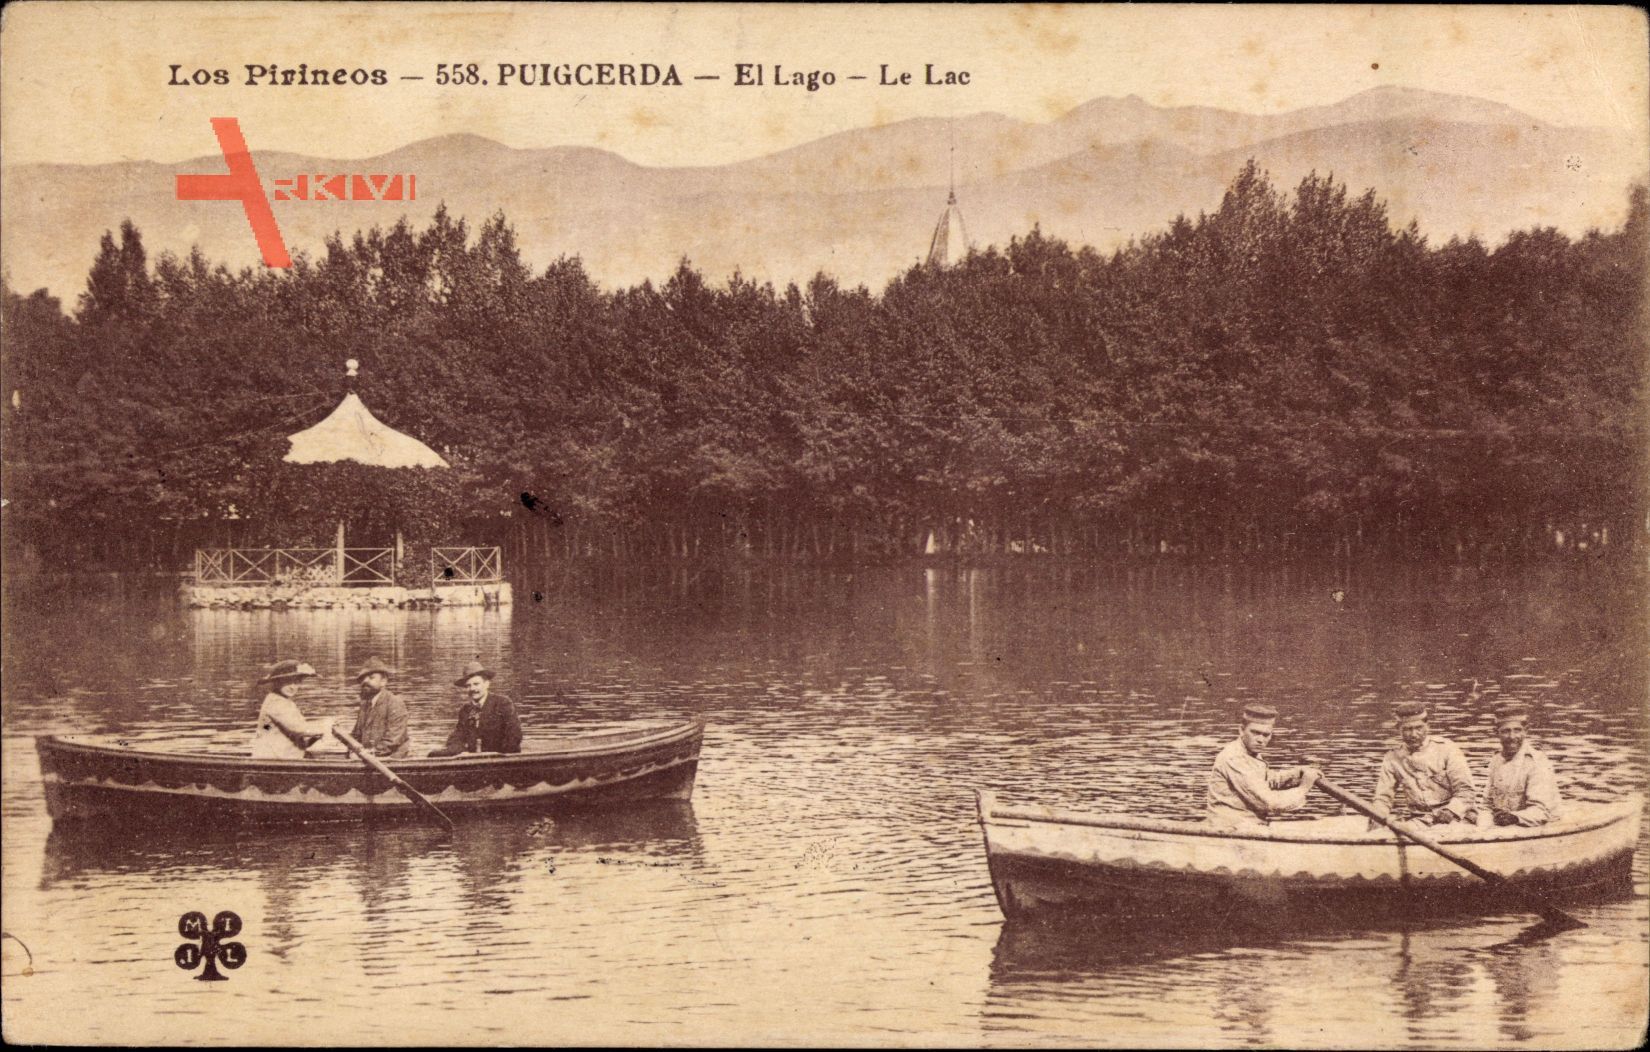 Puigcerda Katalonien, Los Pirineos, El Lage, Le Lac, Boote im See